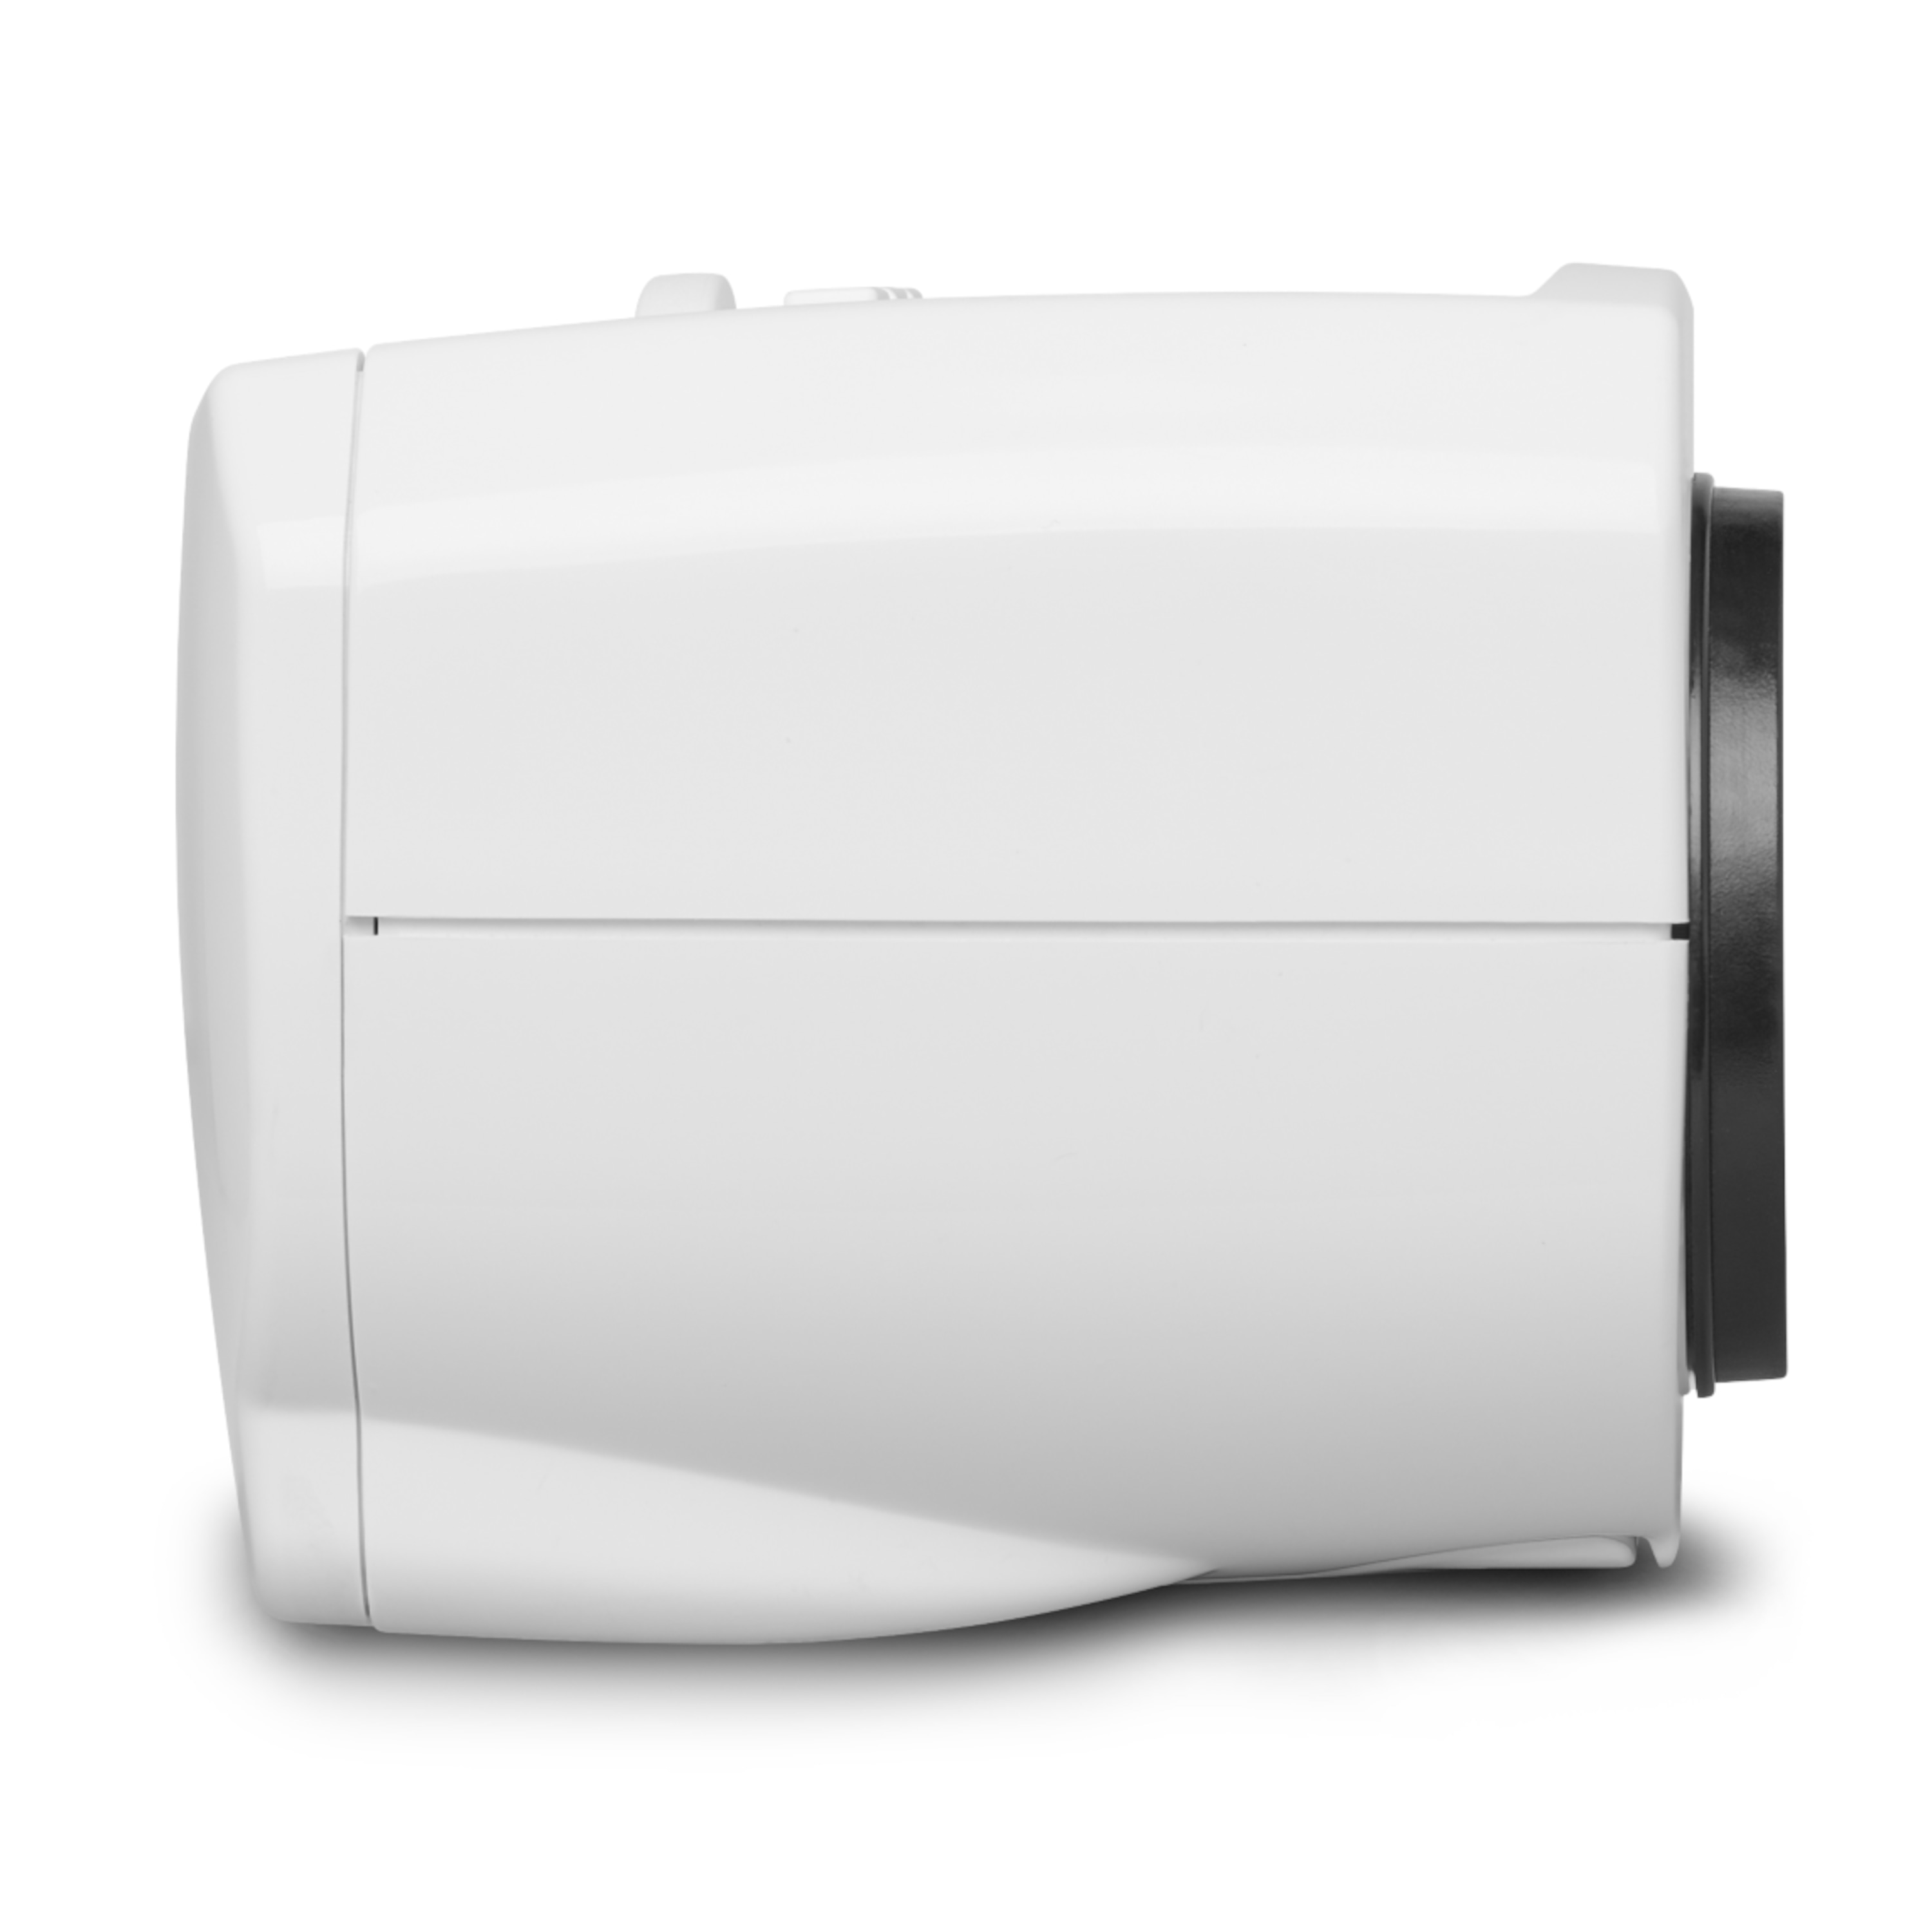 MEDION® Smart Home Heizkörperthermostat P85711, Zeitsteuerung oder Fernsteuerung, 30% Heizkosten sparen, 3 Adapter